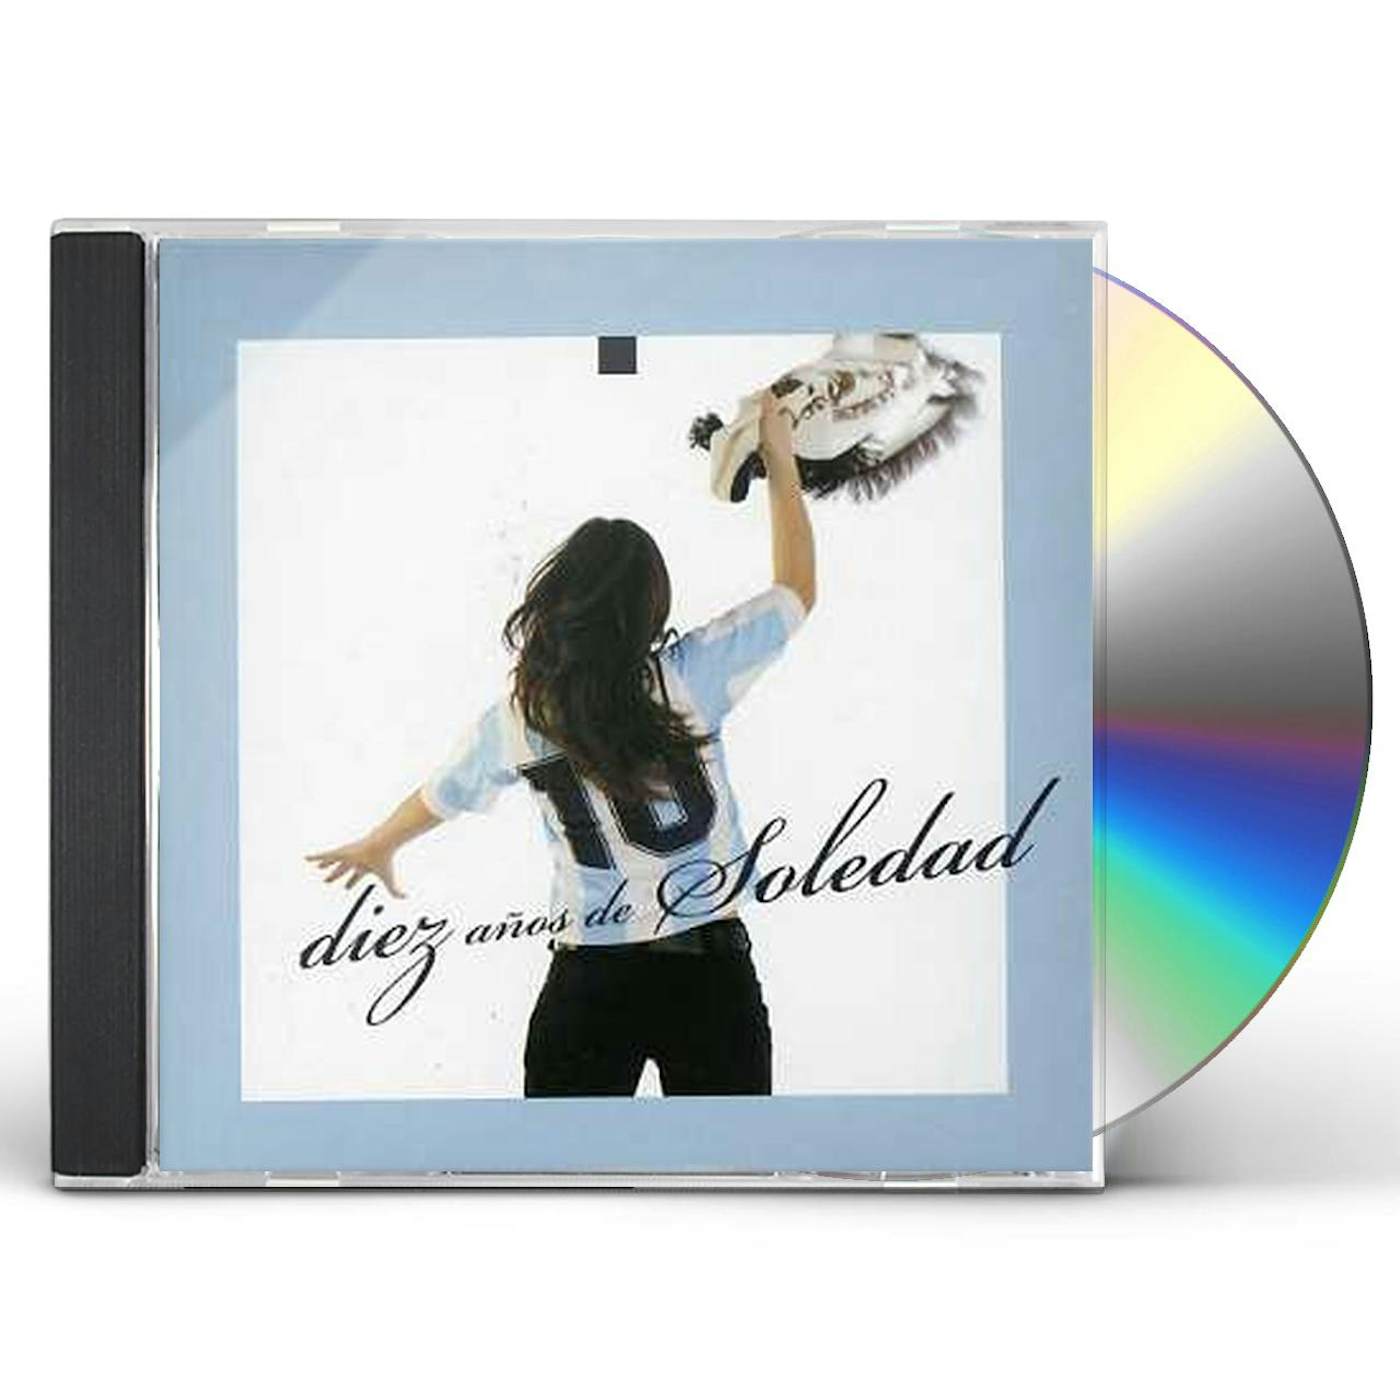 10 ANOS DE SOLEDAD CD